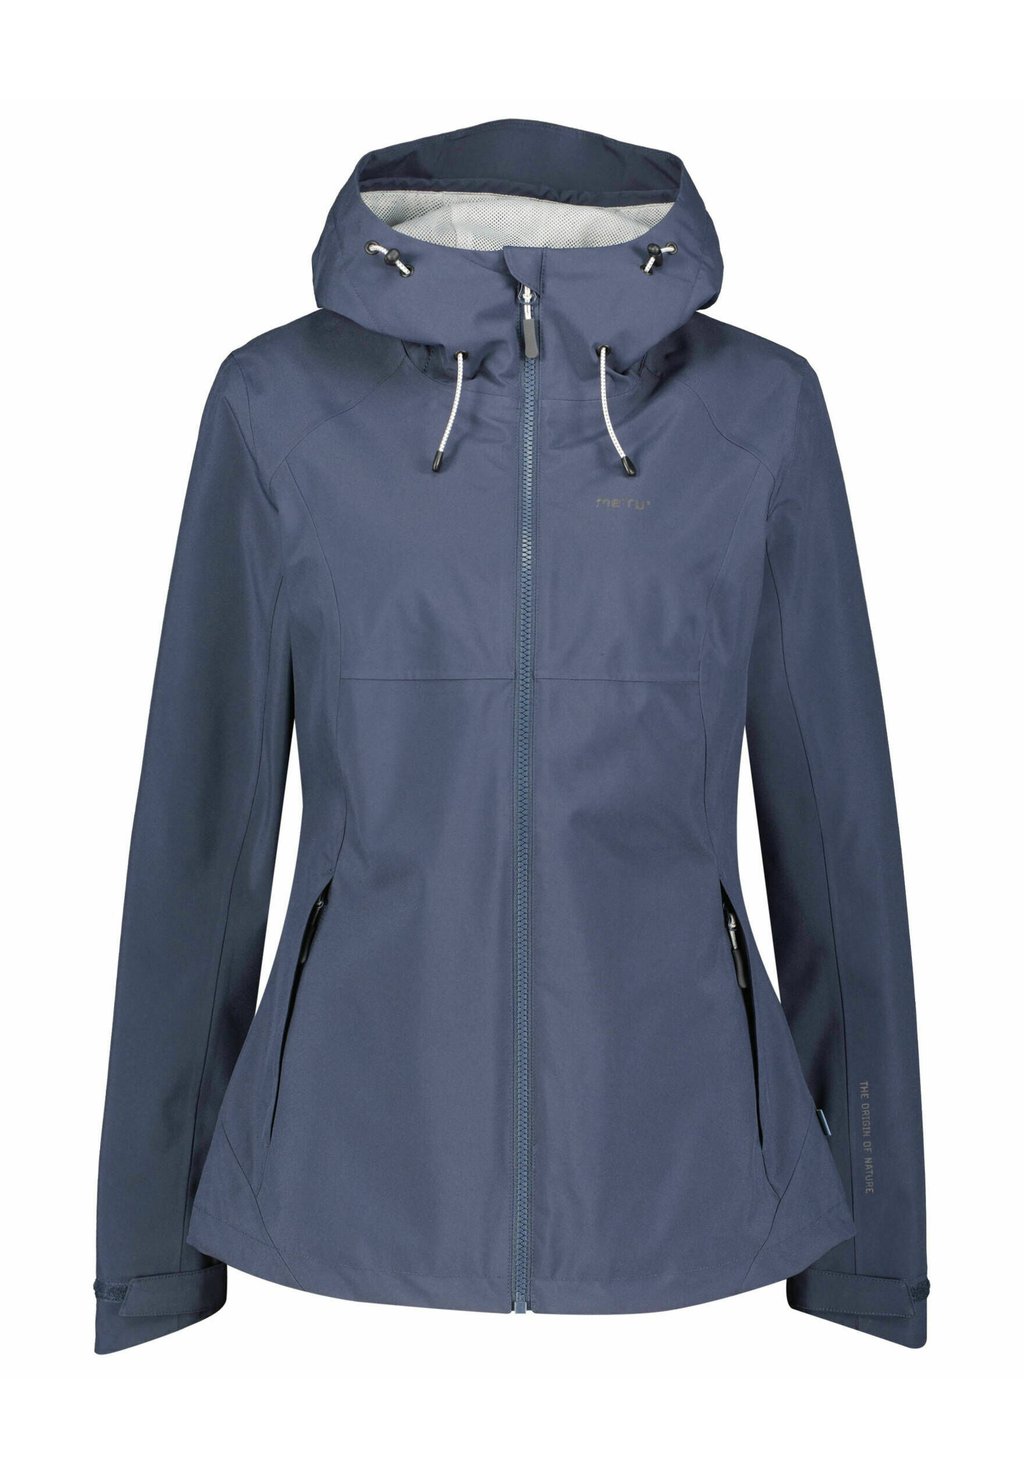 Дождевик/водоотталкивающая куртка TREKKING SULLANA Meru, цвет nachtblau (301) клей kroxx циакрин 301 100мл kroxx 301 100